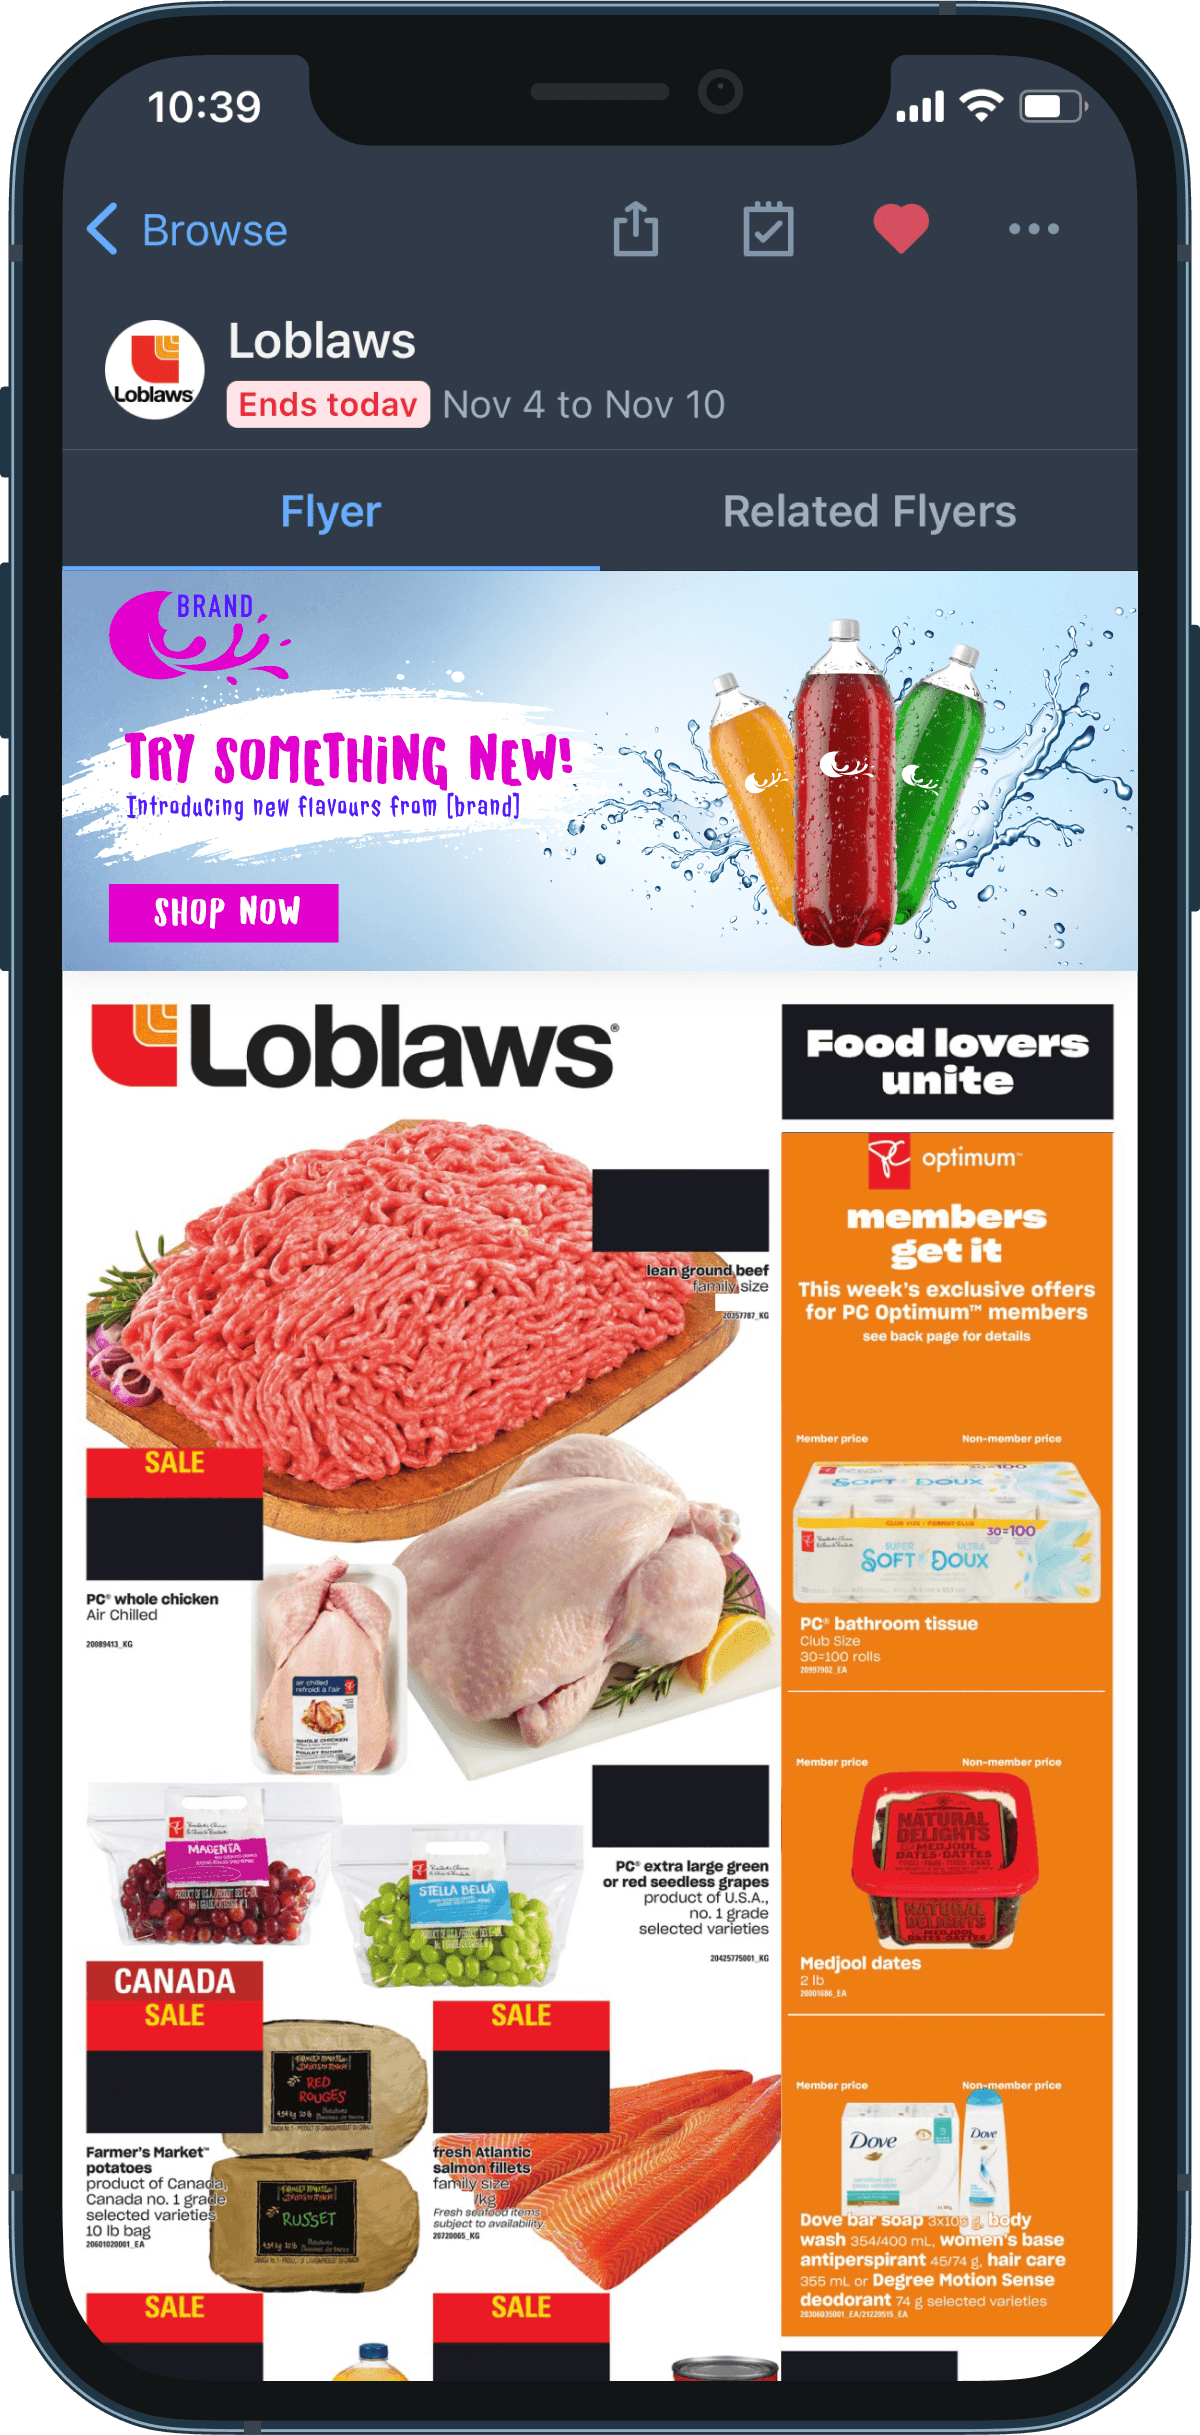 Un écran de téléphone intelligent affiche une circulaire de Loblaws présentant des rabais sur les produits d’épicerie. 